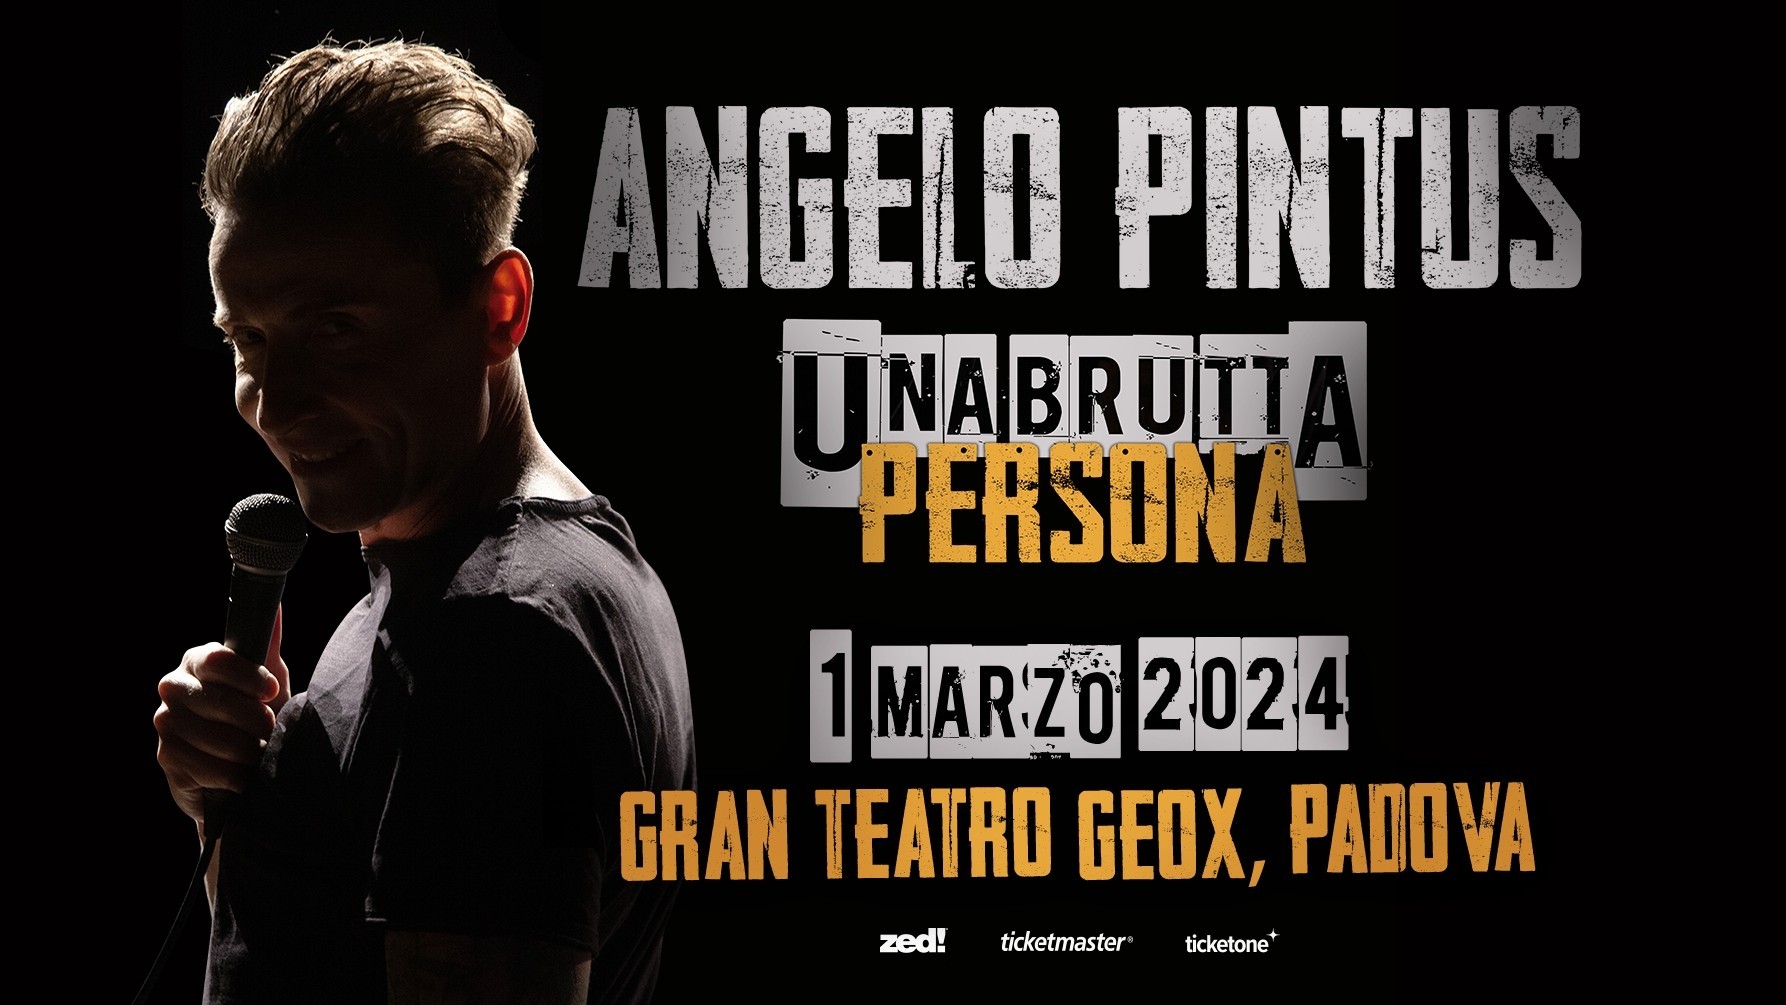 Angelo Pintus "Una brutta persona"